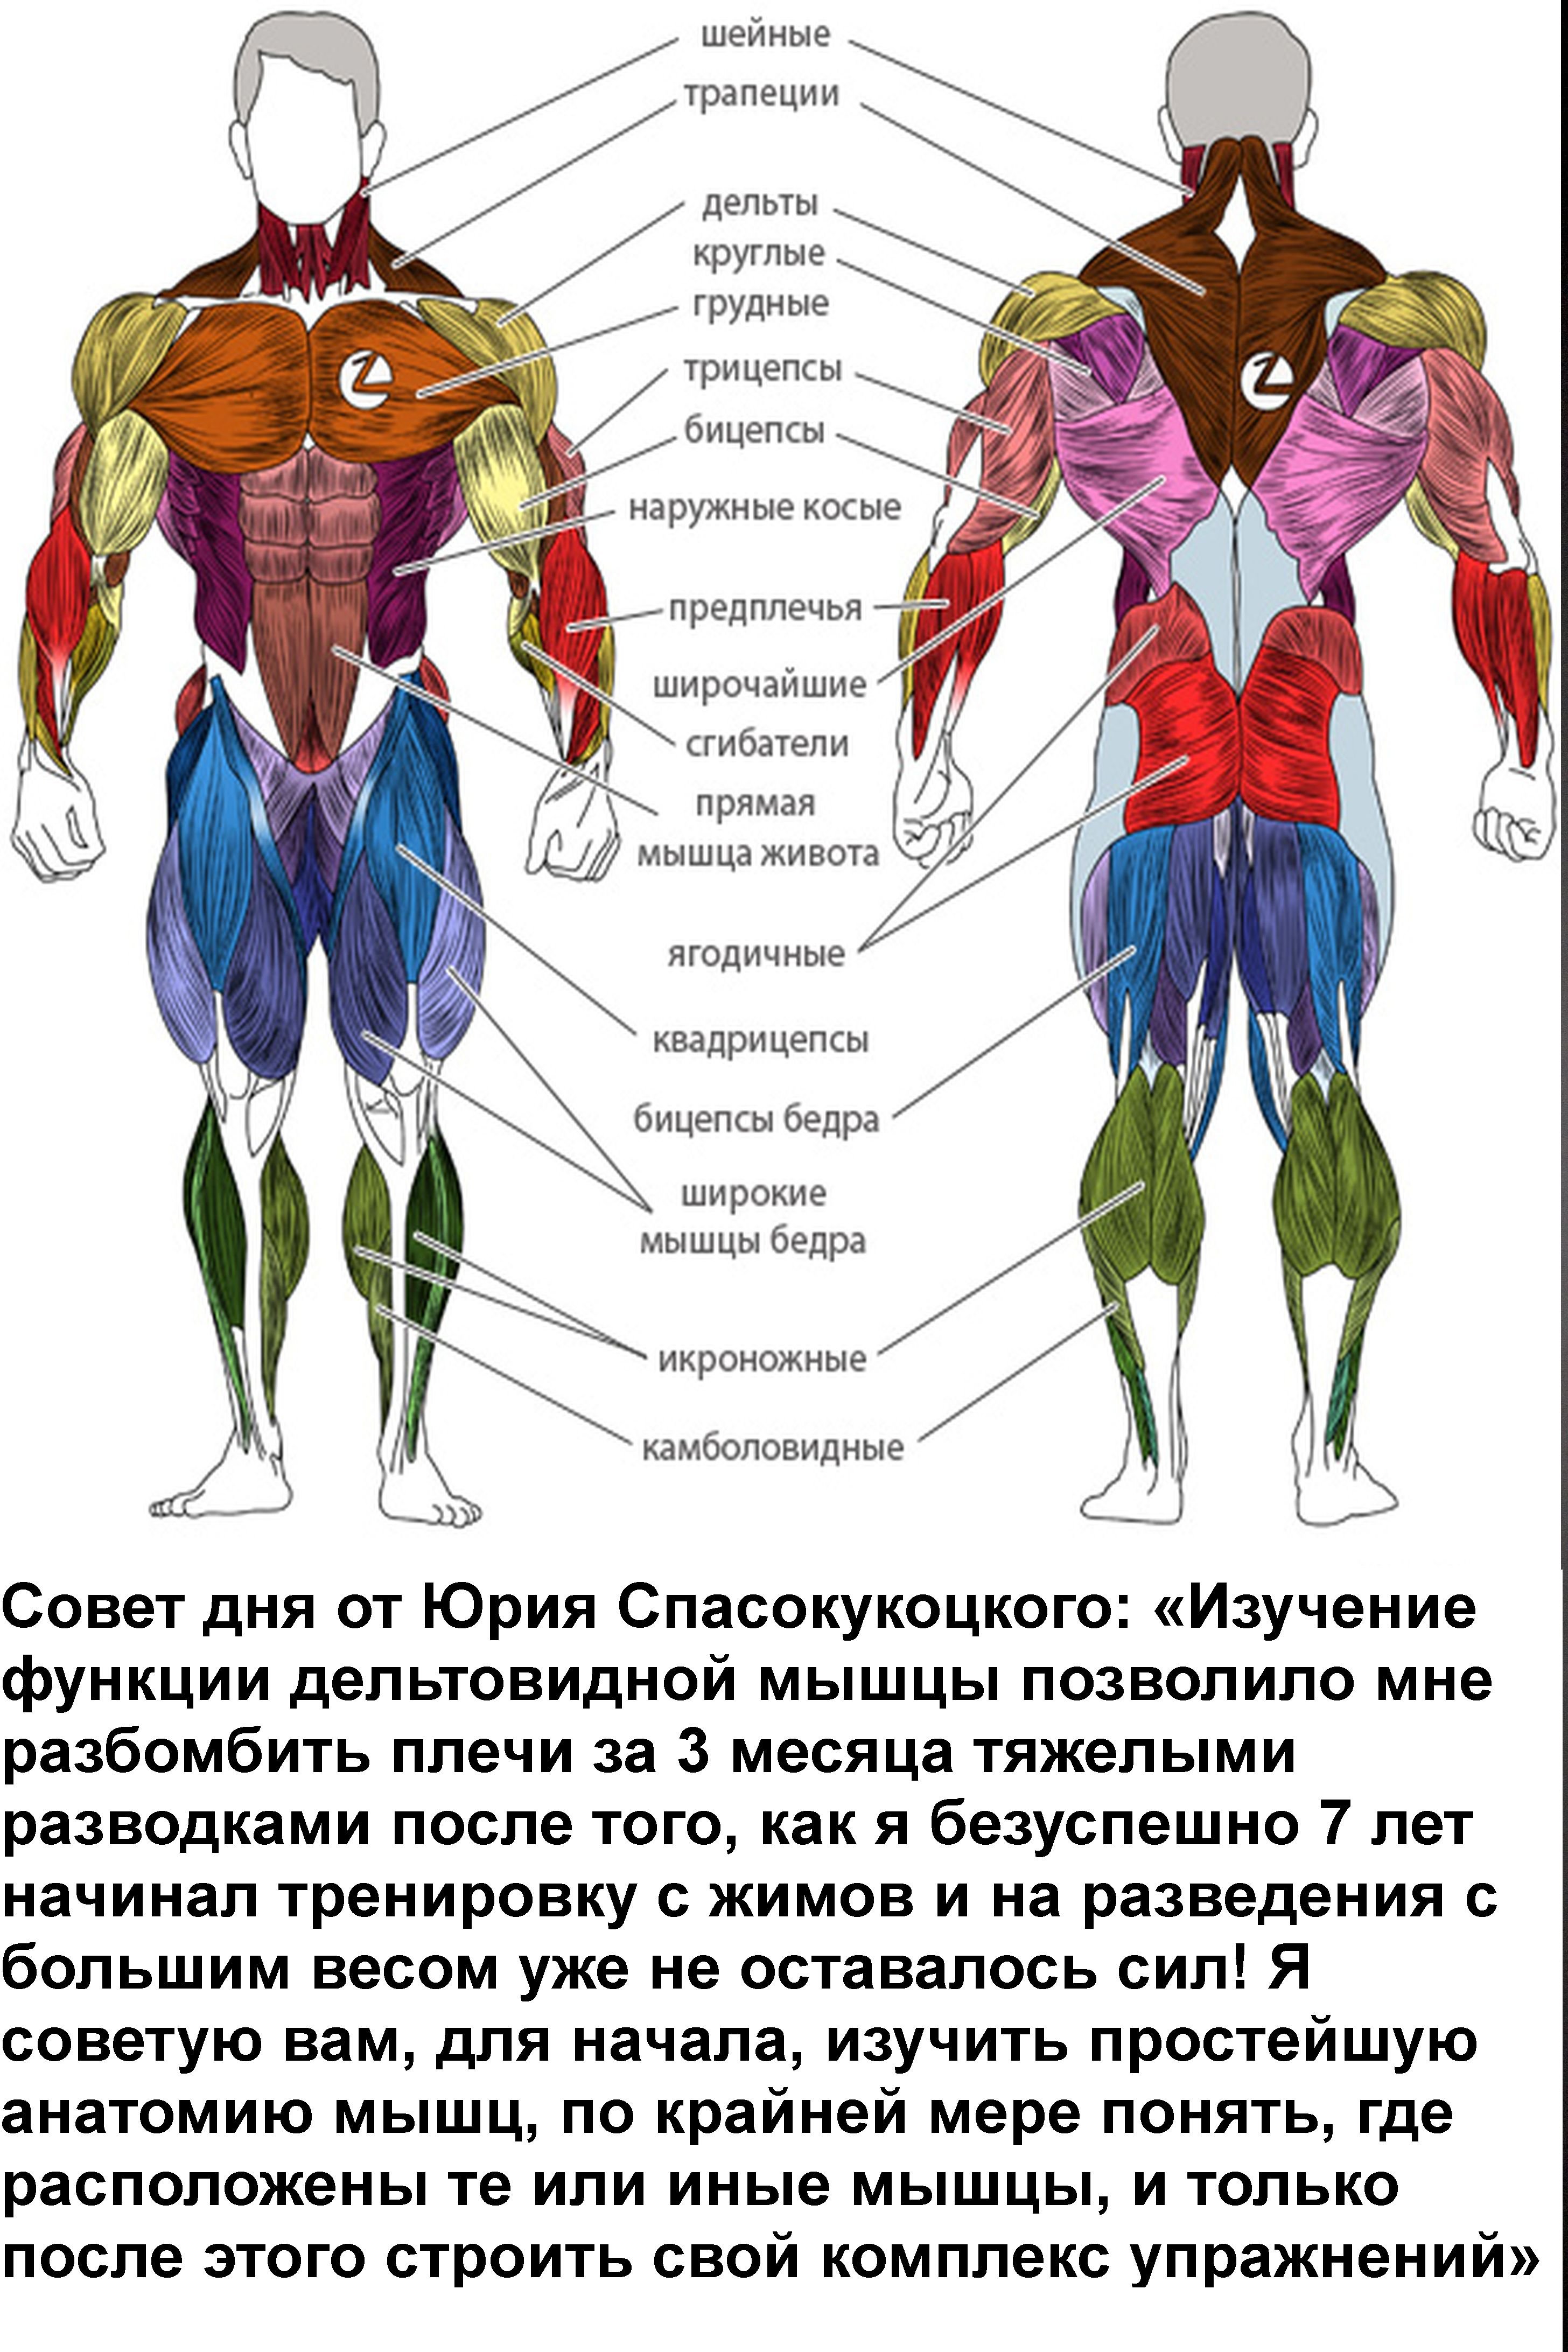 дельтовидная мышца - Сток картинки